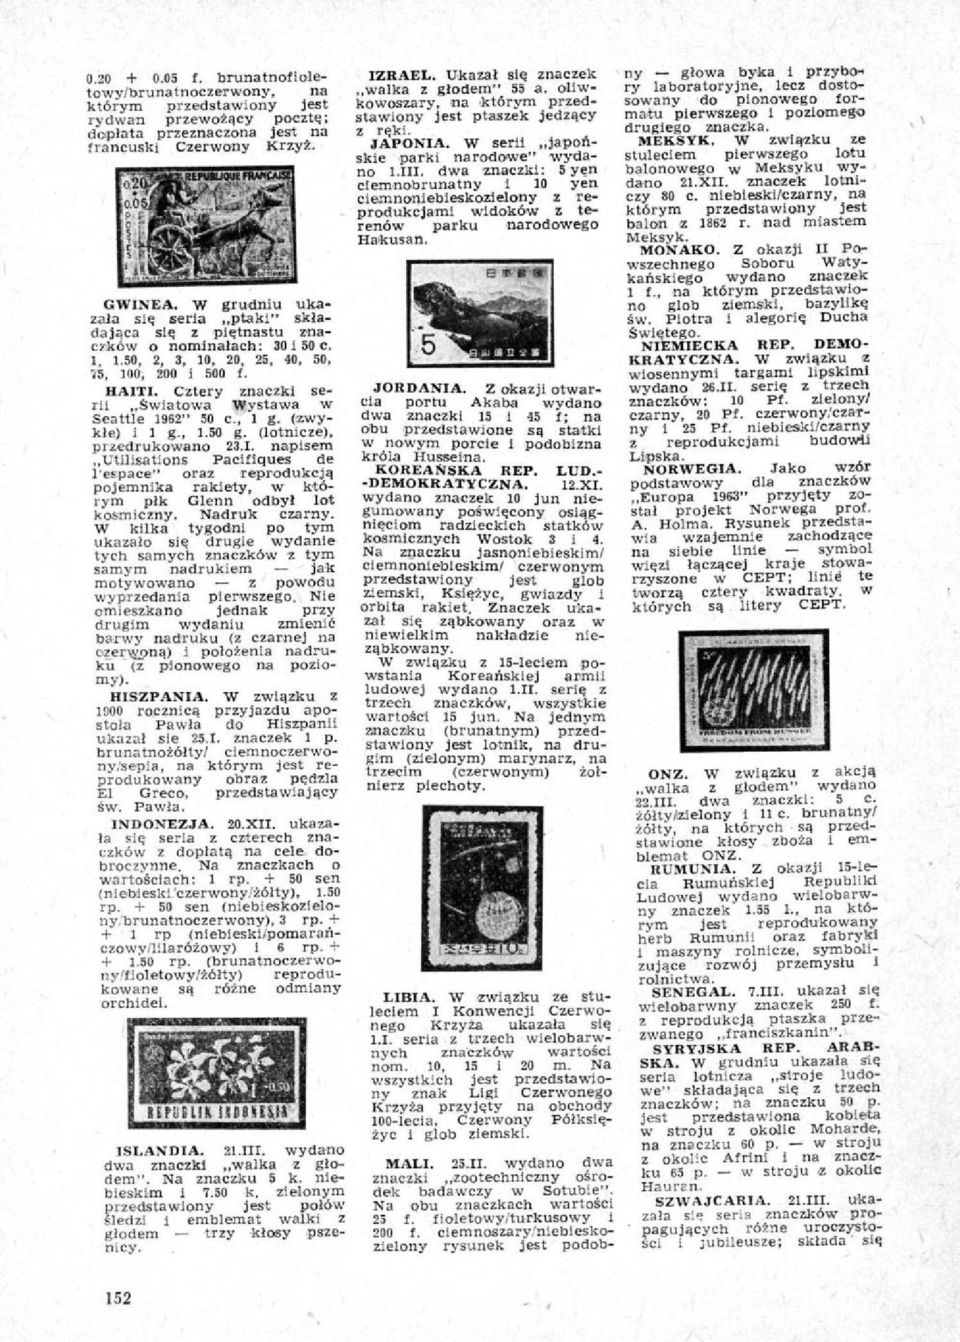 Cztery znaczki serii Sw latowa Wystawa w Seattle 1962" 50 c., 1 g. (zwykle) I ł g., 1.50 g. (lotnicze), przedrukowano 23.1. napisem Utillsations Pacifiques de 1~ace" oraz reprodukcją pojemnika rakiety, w którym pik Glenn odbył lot kosmiczny.